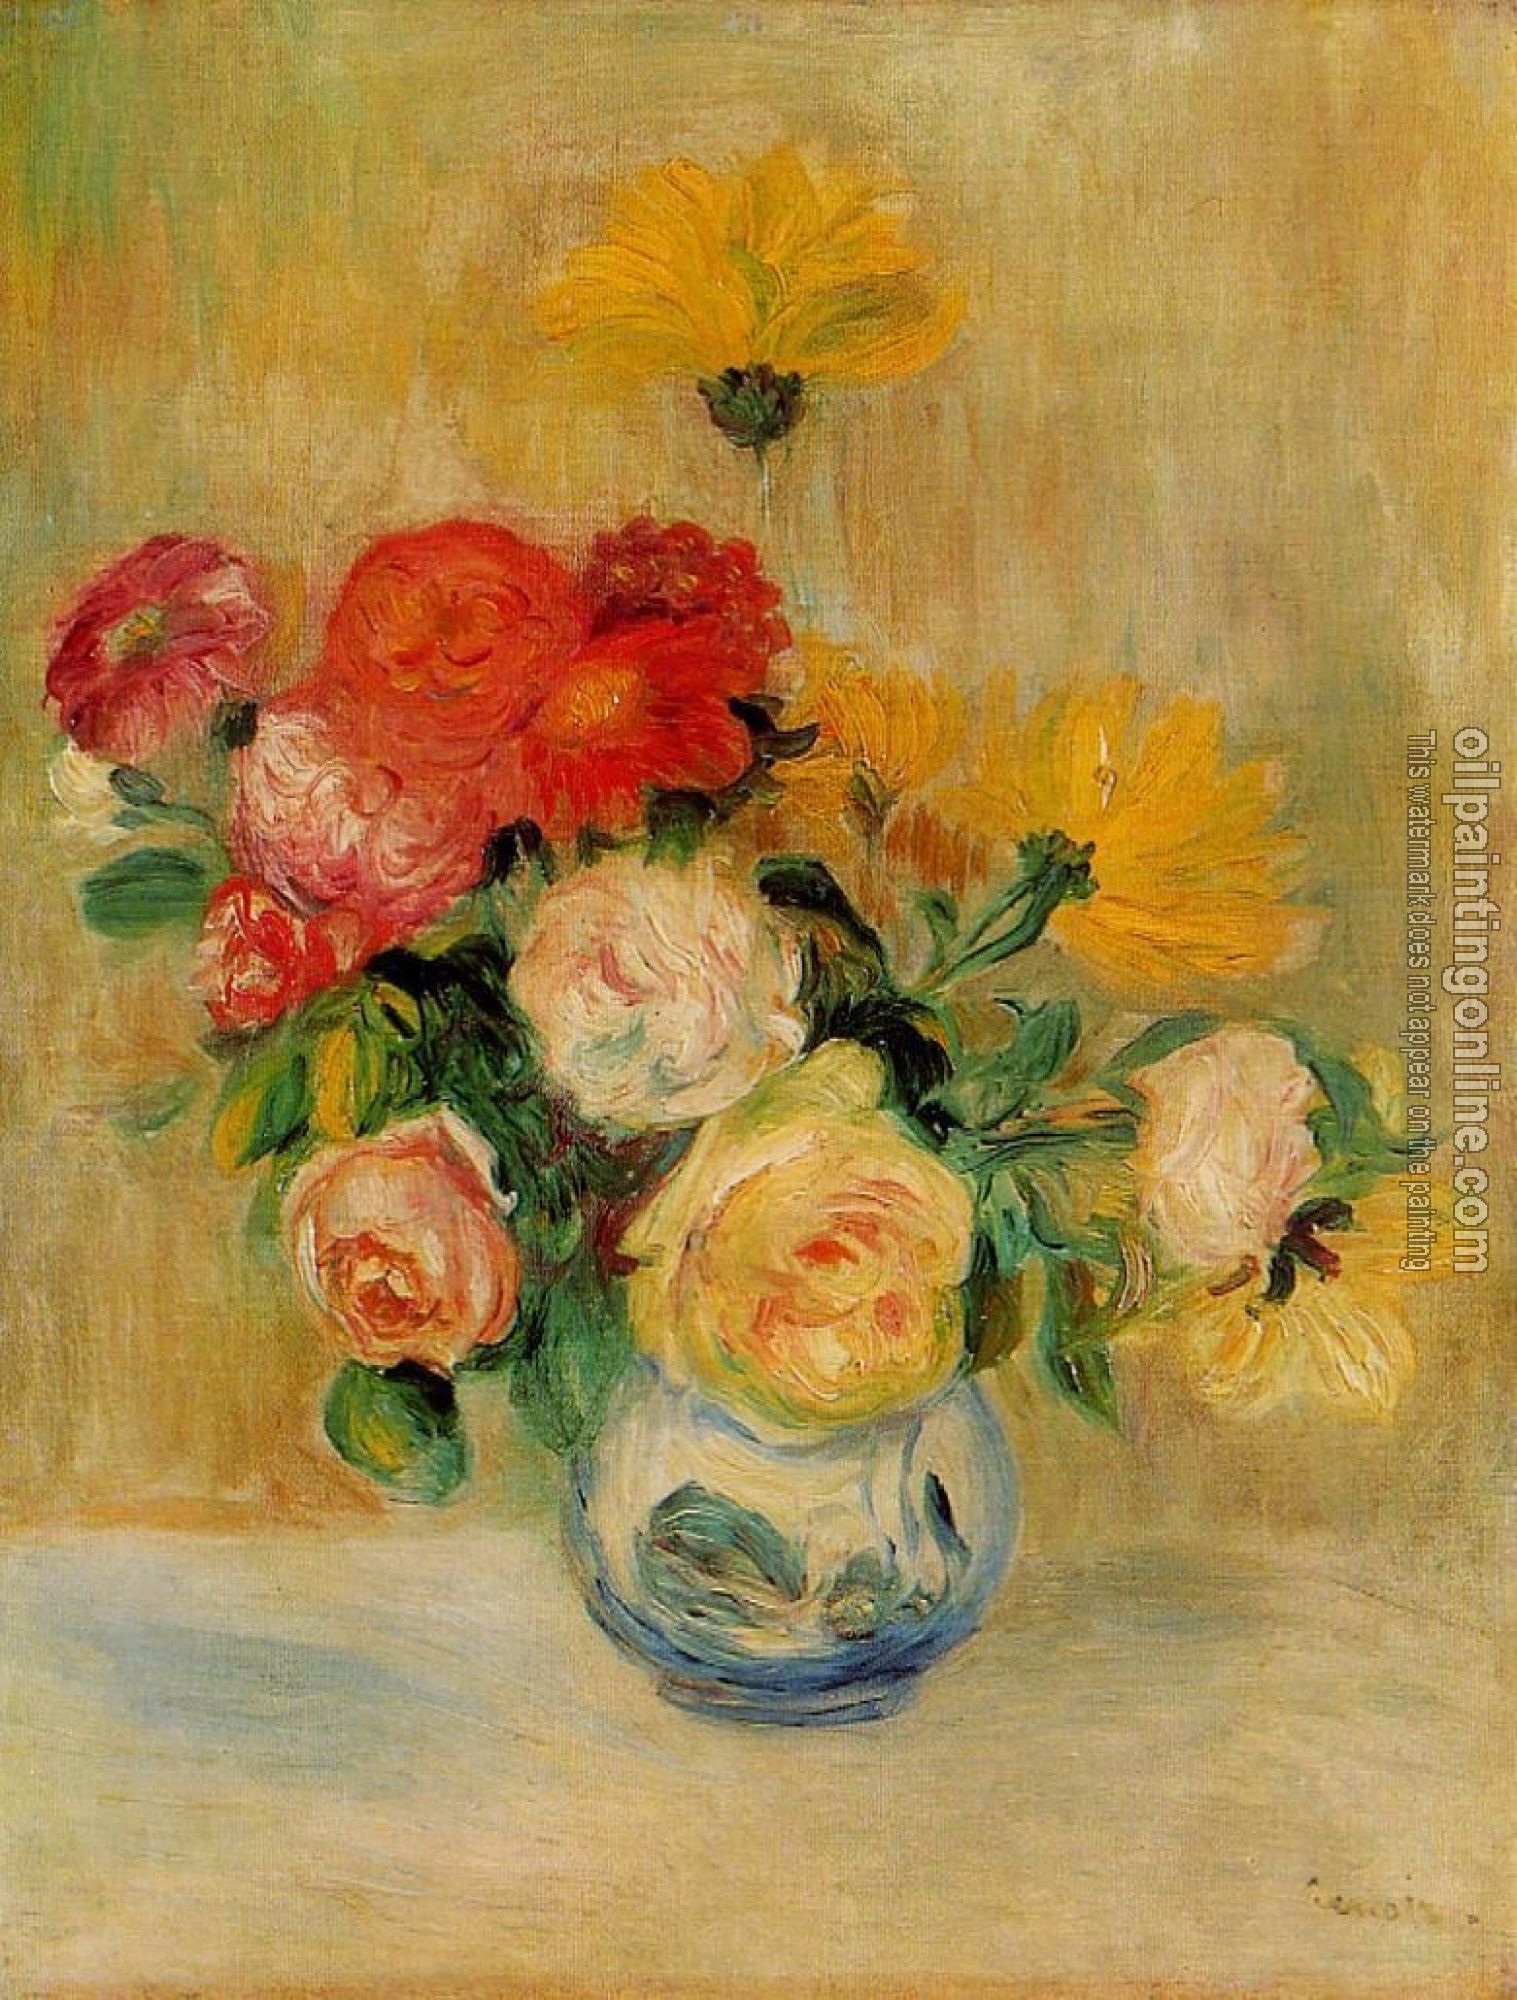 Renoir, Pierre Auguste - Vase of Roses and Dahlias